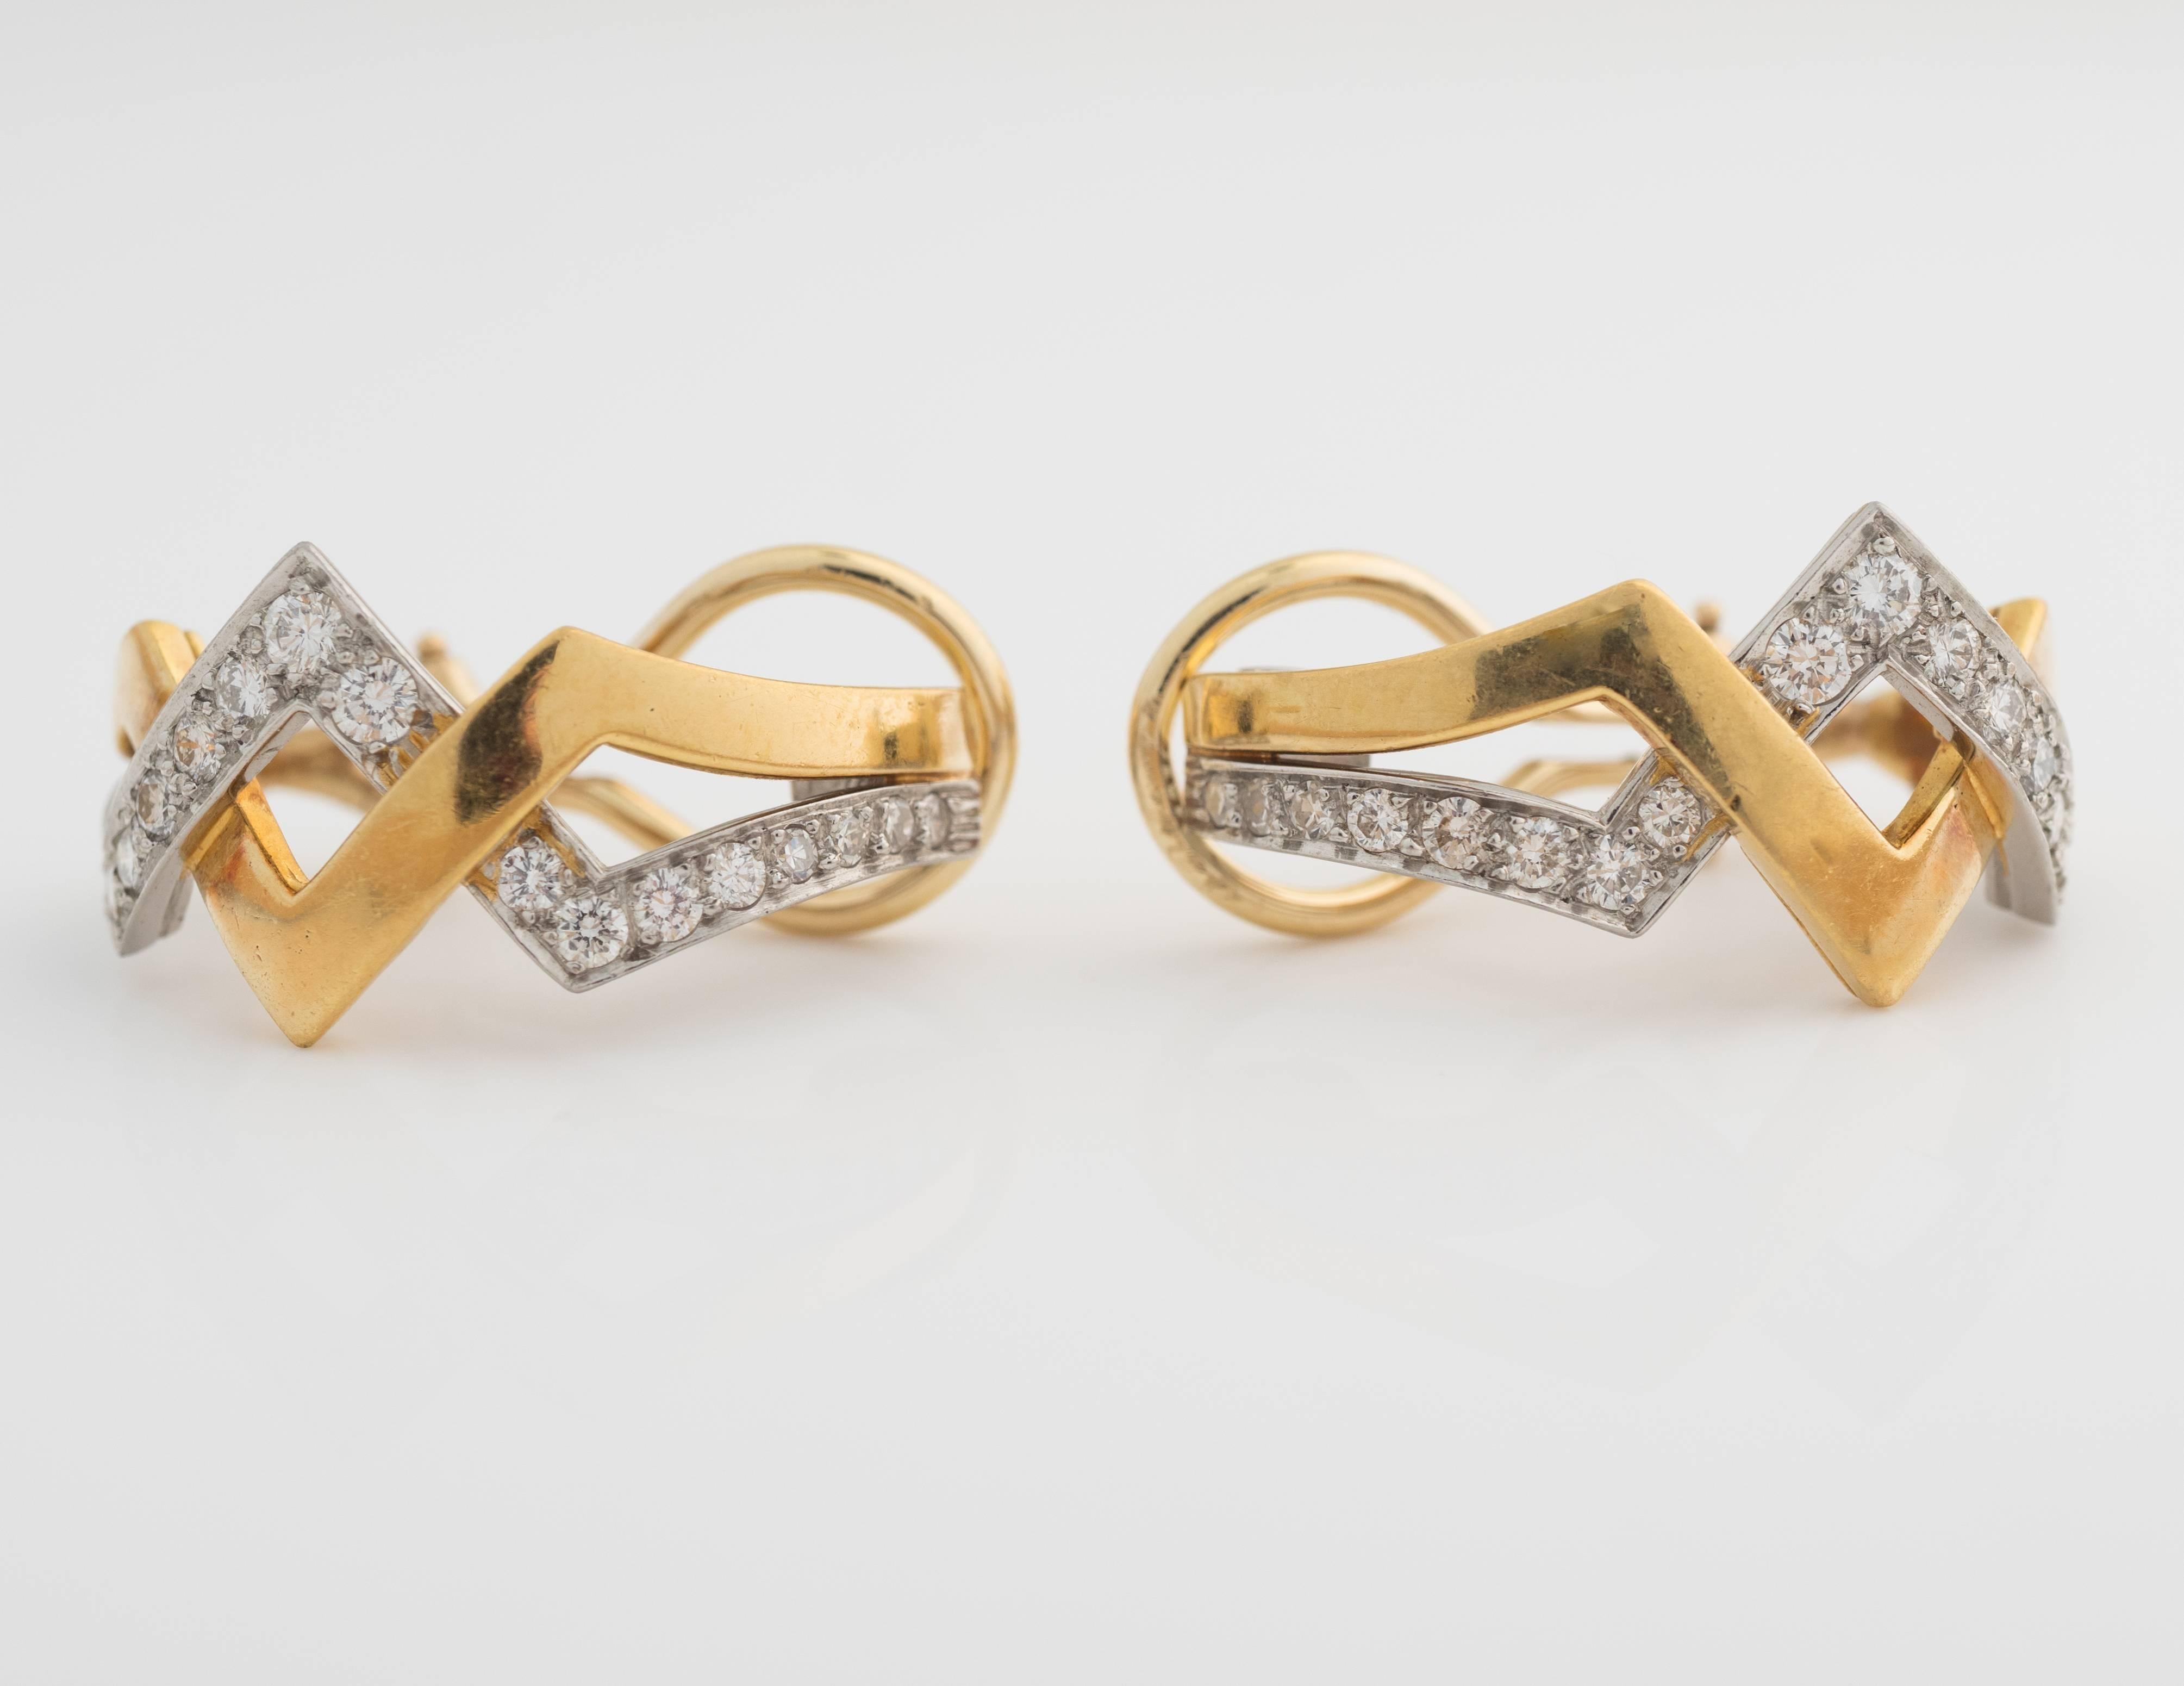 boucles d'oreilles en diamant des années 1960, réalisées en métaux mixtes bicolores, platine et or 18kt. Elles présentent un poids total de 1 carat de diamants de couleur F et de pureté VS. Les diamants sont sertis dans du platine, s'entrelaçant